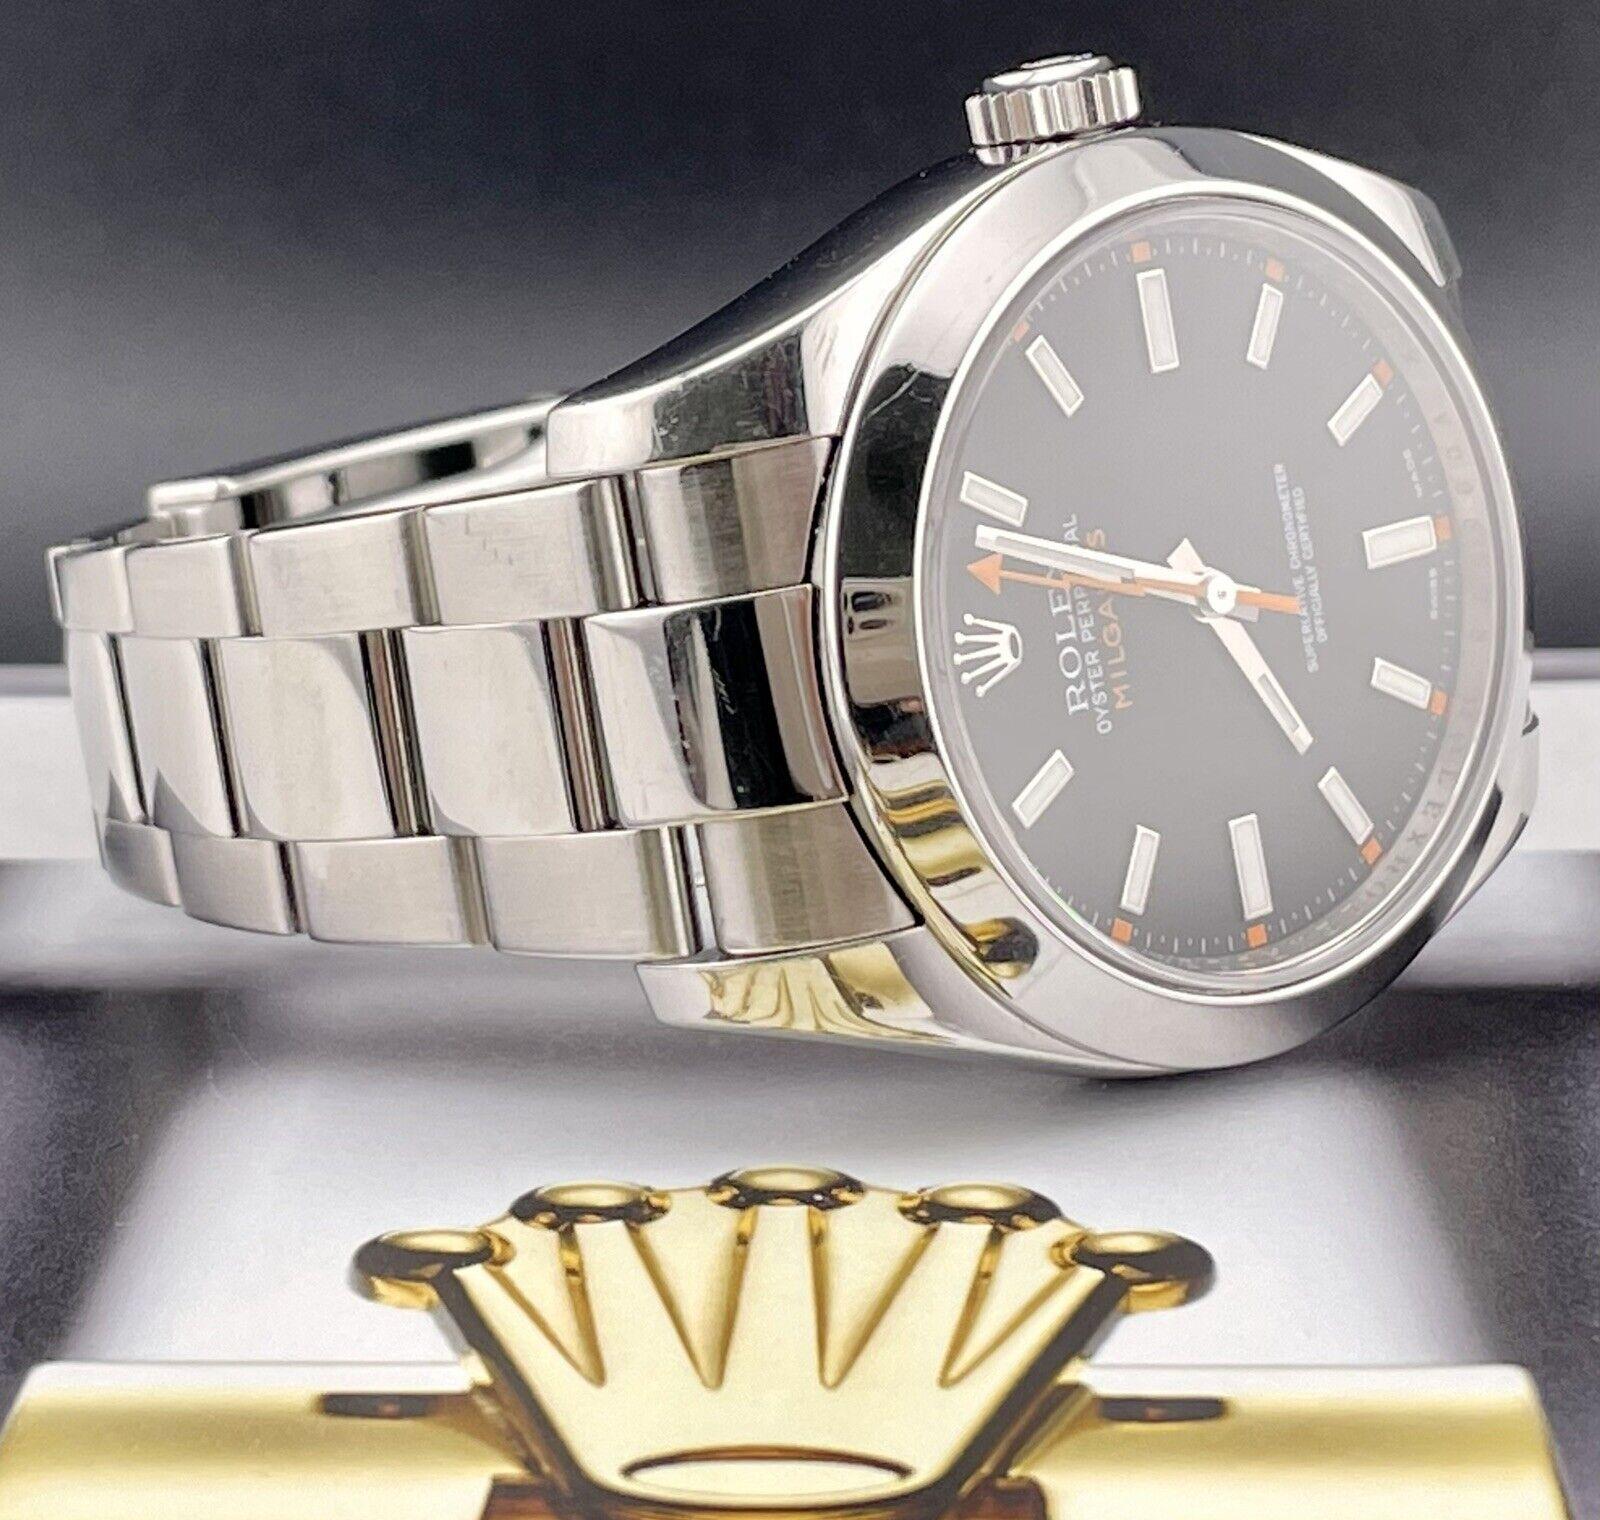 Montre Rolex Oyster Perpetual Milgauss 40mm. Une montre d'occasion avec boîte cadeau. La montre est 100% authentique et est accompagnée d'une carte d'authenticité. La référence de la montre est 116400 et elle est en bon état (voir photos, a besoin